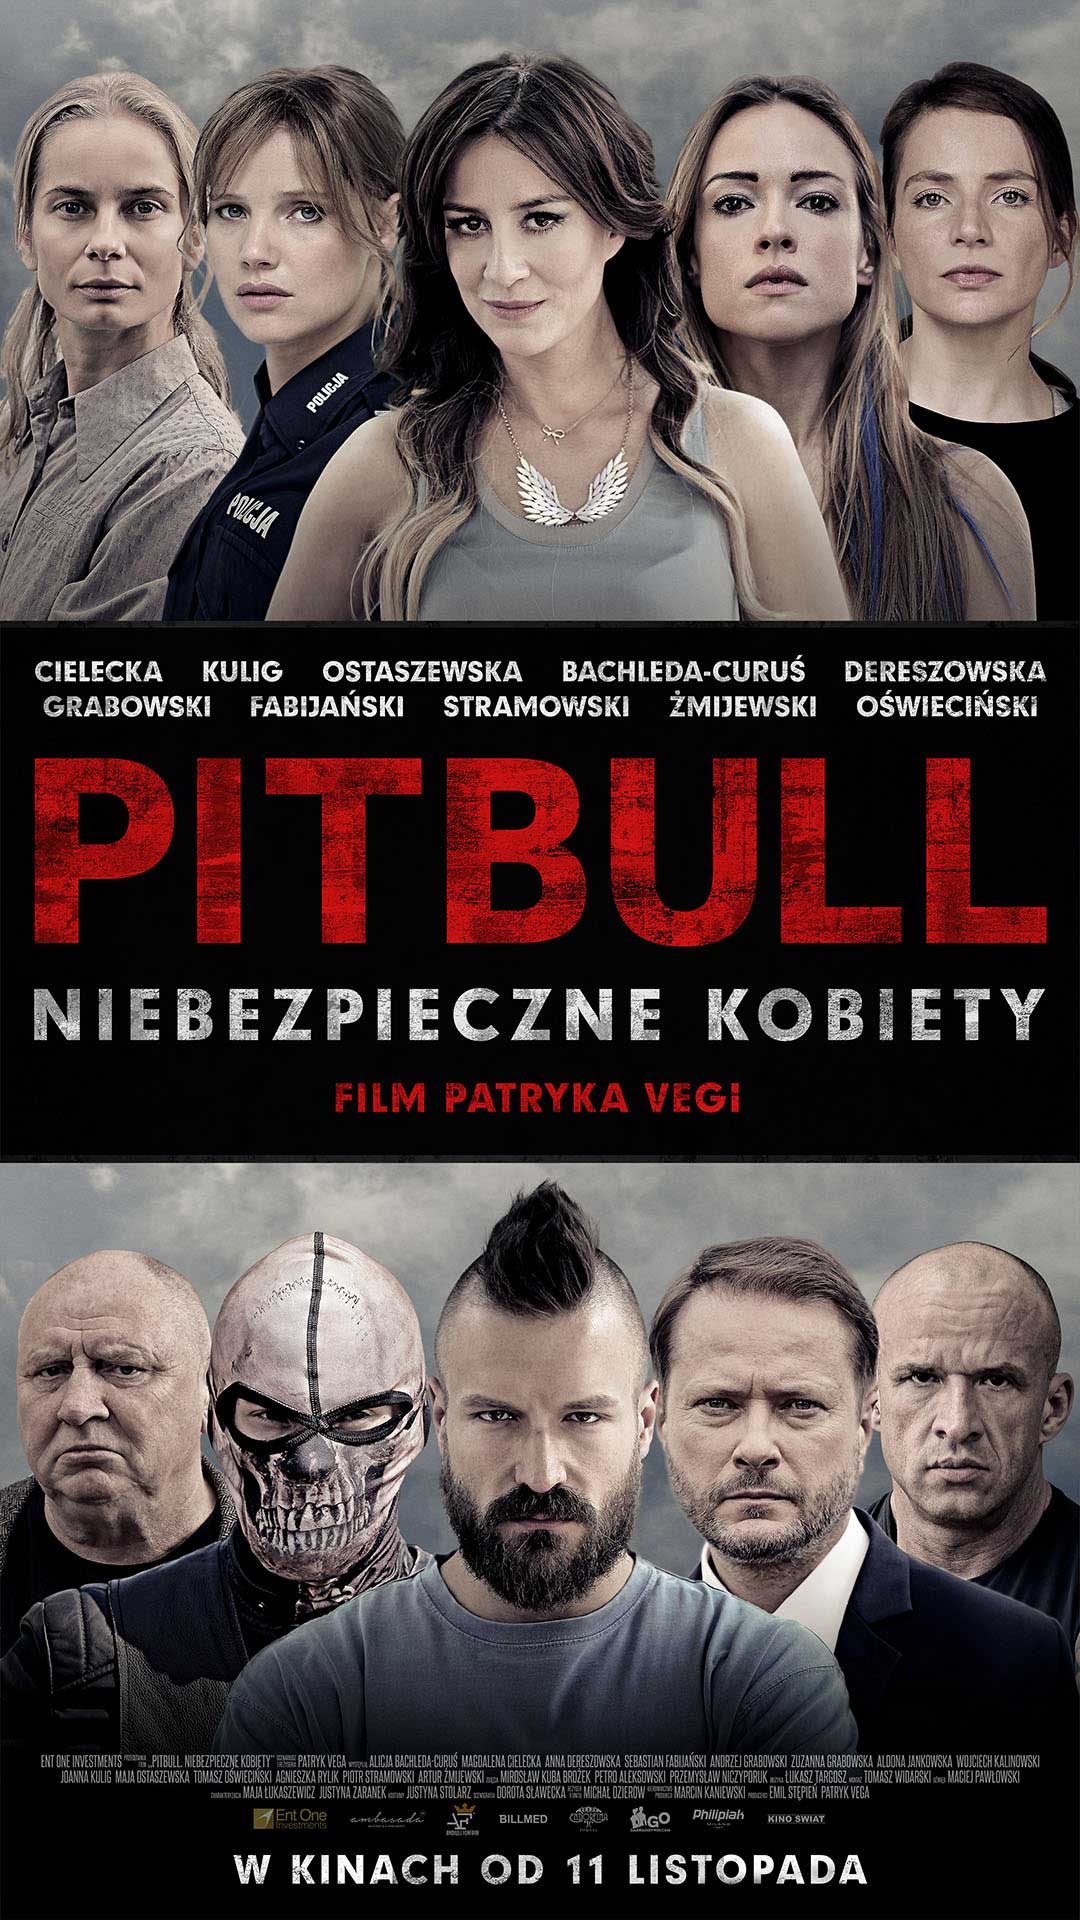 Pitbull. Niebezpieczne kobiety – przedpremiera w Cinema City już 10 listopada